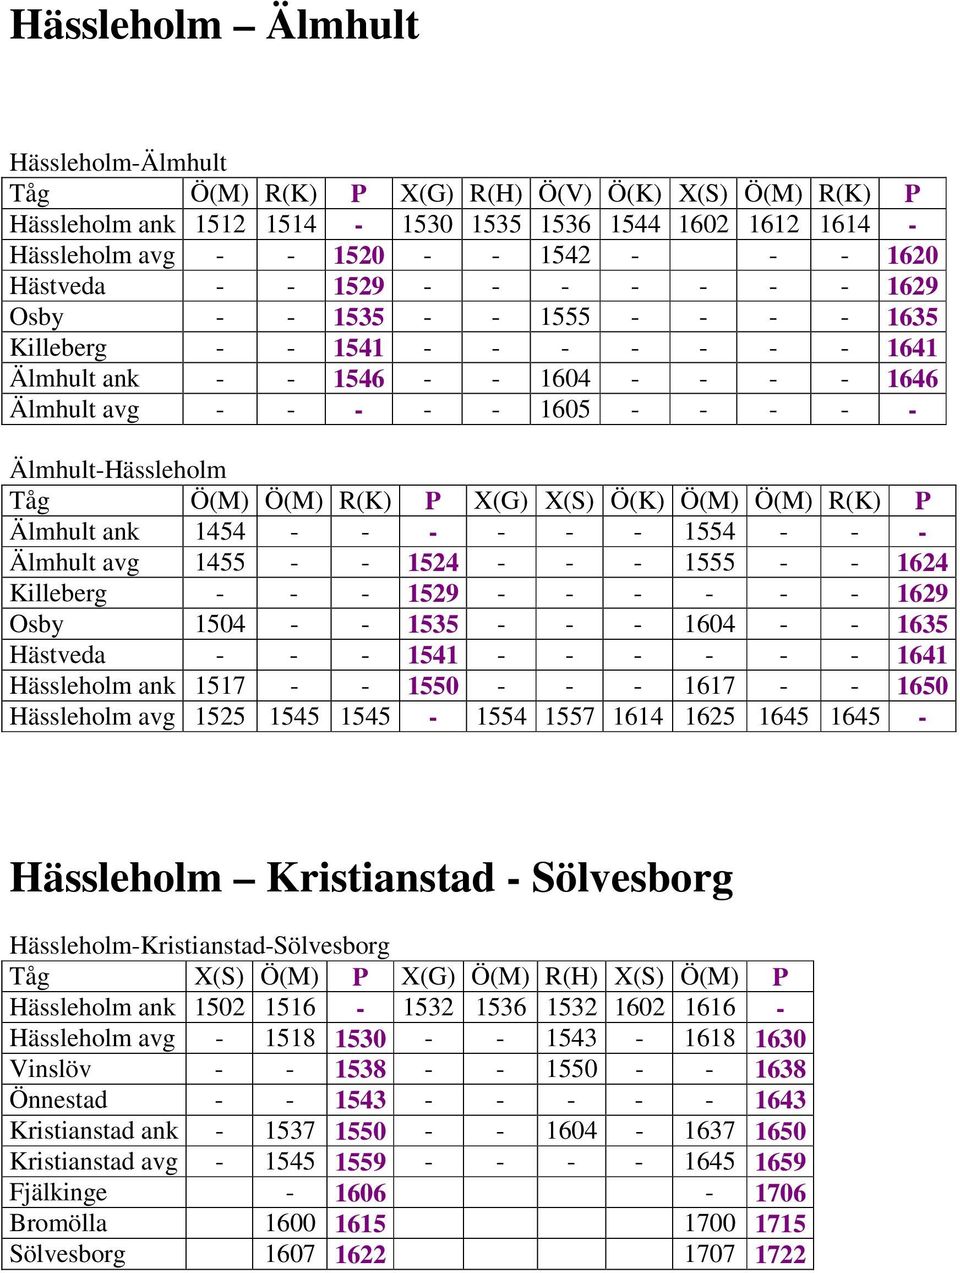 Älmhult-Hässleholm Tåg Ö(M) Ö(M) R(K) P X(G) X(S) Ö(K) Ö(M) Ö(M) R(K) P Älmhult ank 1454 - - - - - - 1554 - - - Älmhult avg 1455 - - 1524 - - - 1555 - - 1624 Killeberg - - - 1529 - - - - - - 1629